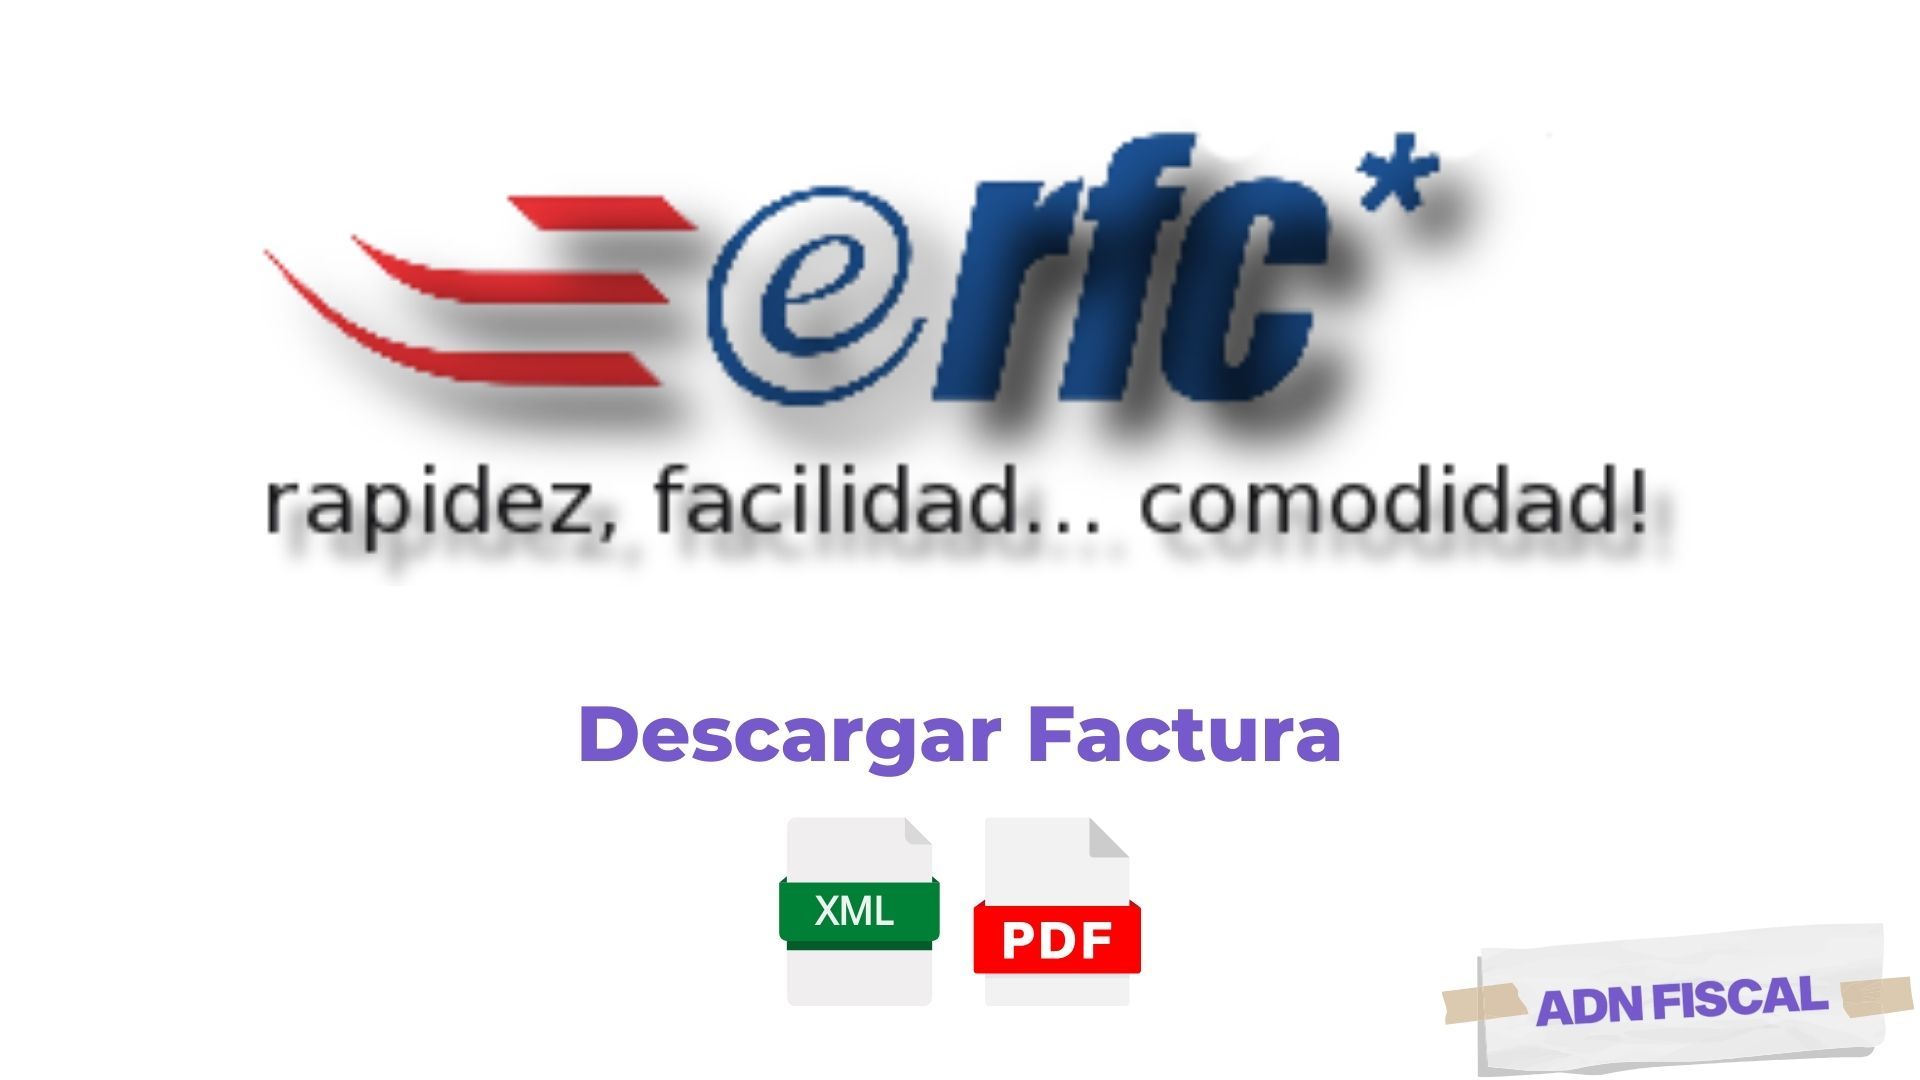 Facturacion eRFC Facturacion ADN Fiscal